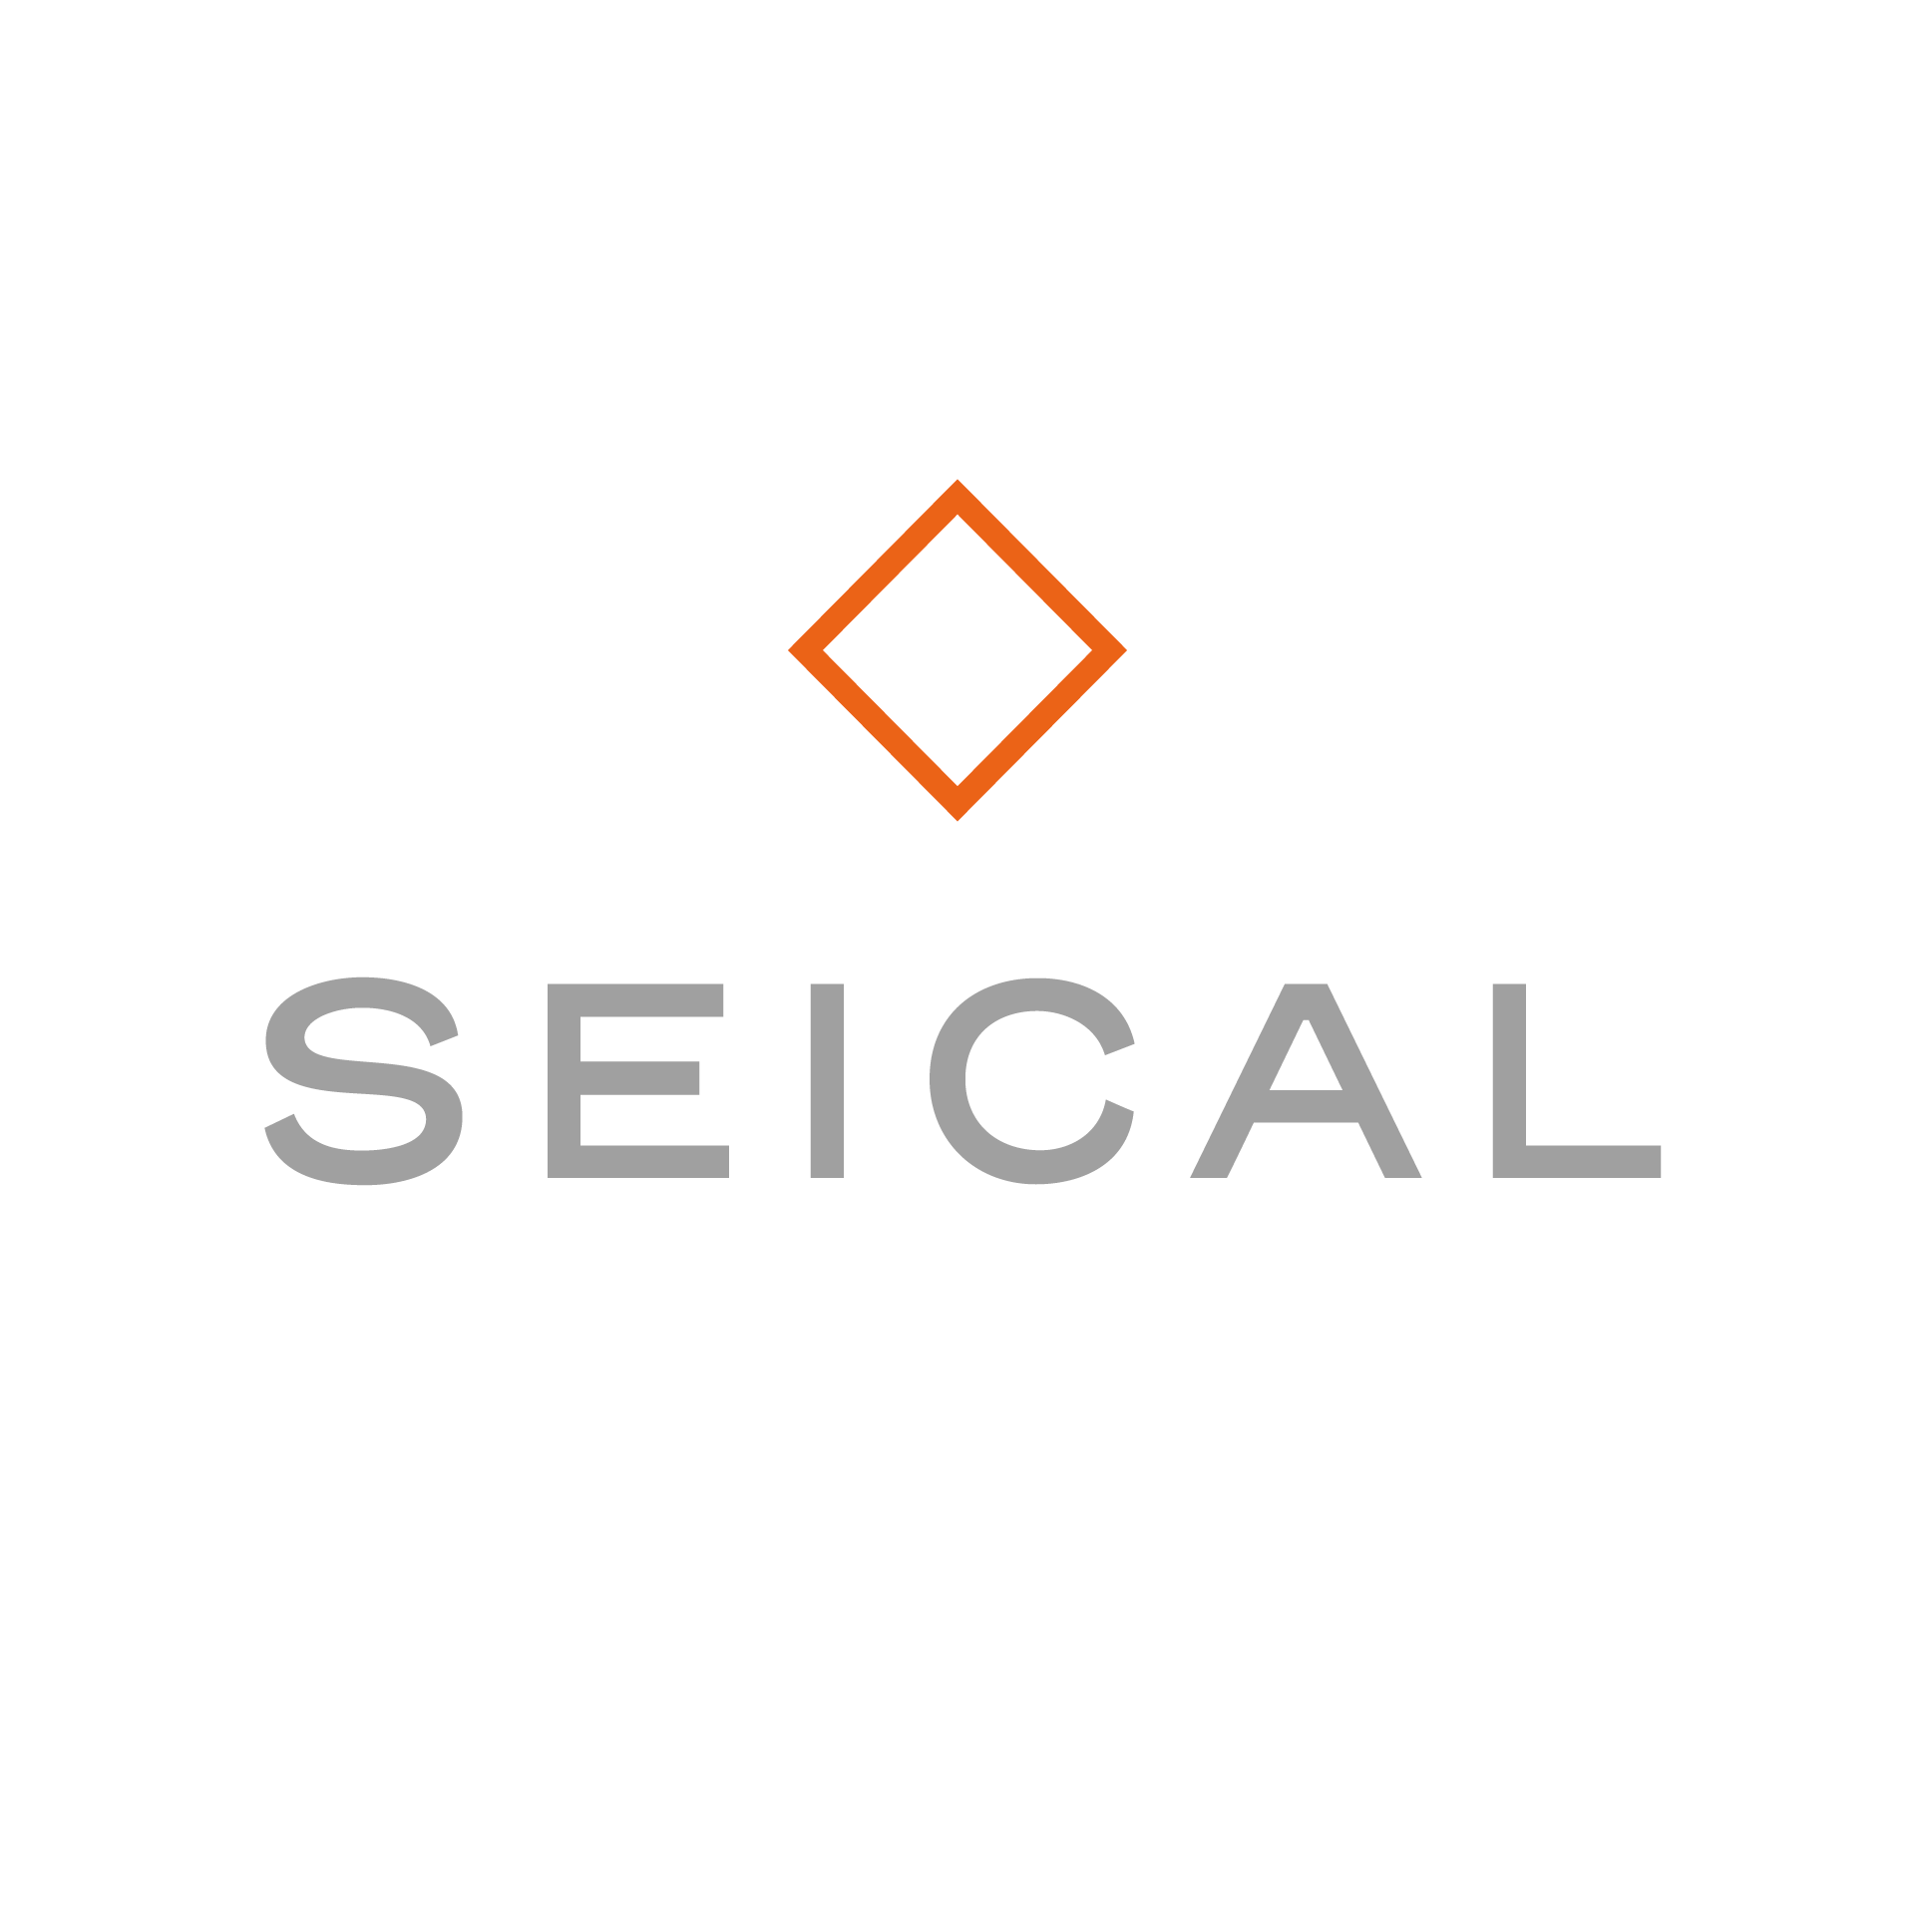 Seical est client de l'agence digitale Eywa web